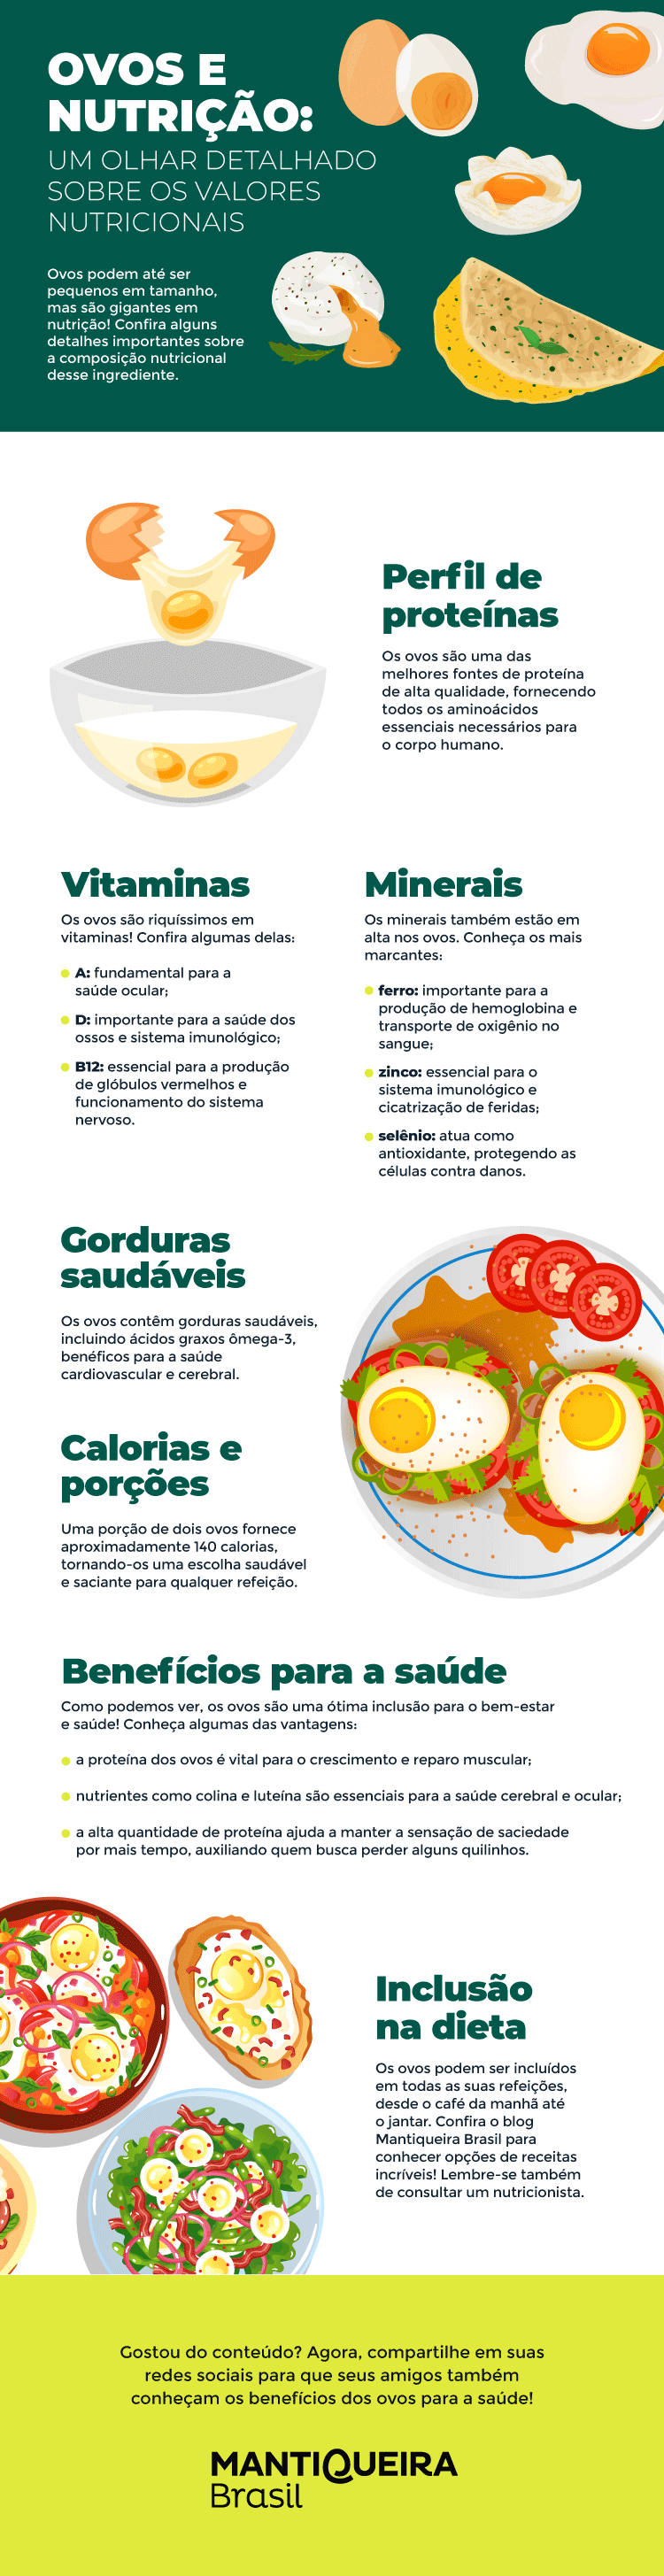 Ovos-e-nutrição-um-olhar-detalhado-sobre-os-valores-nutricionais